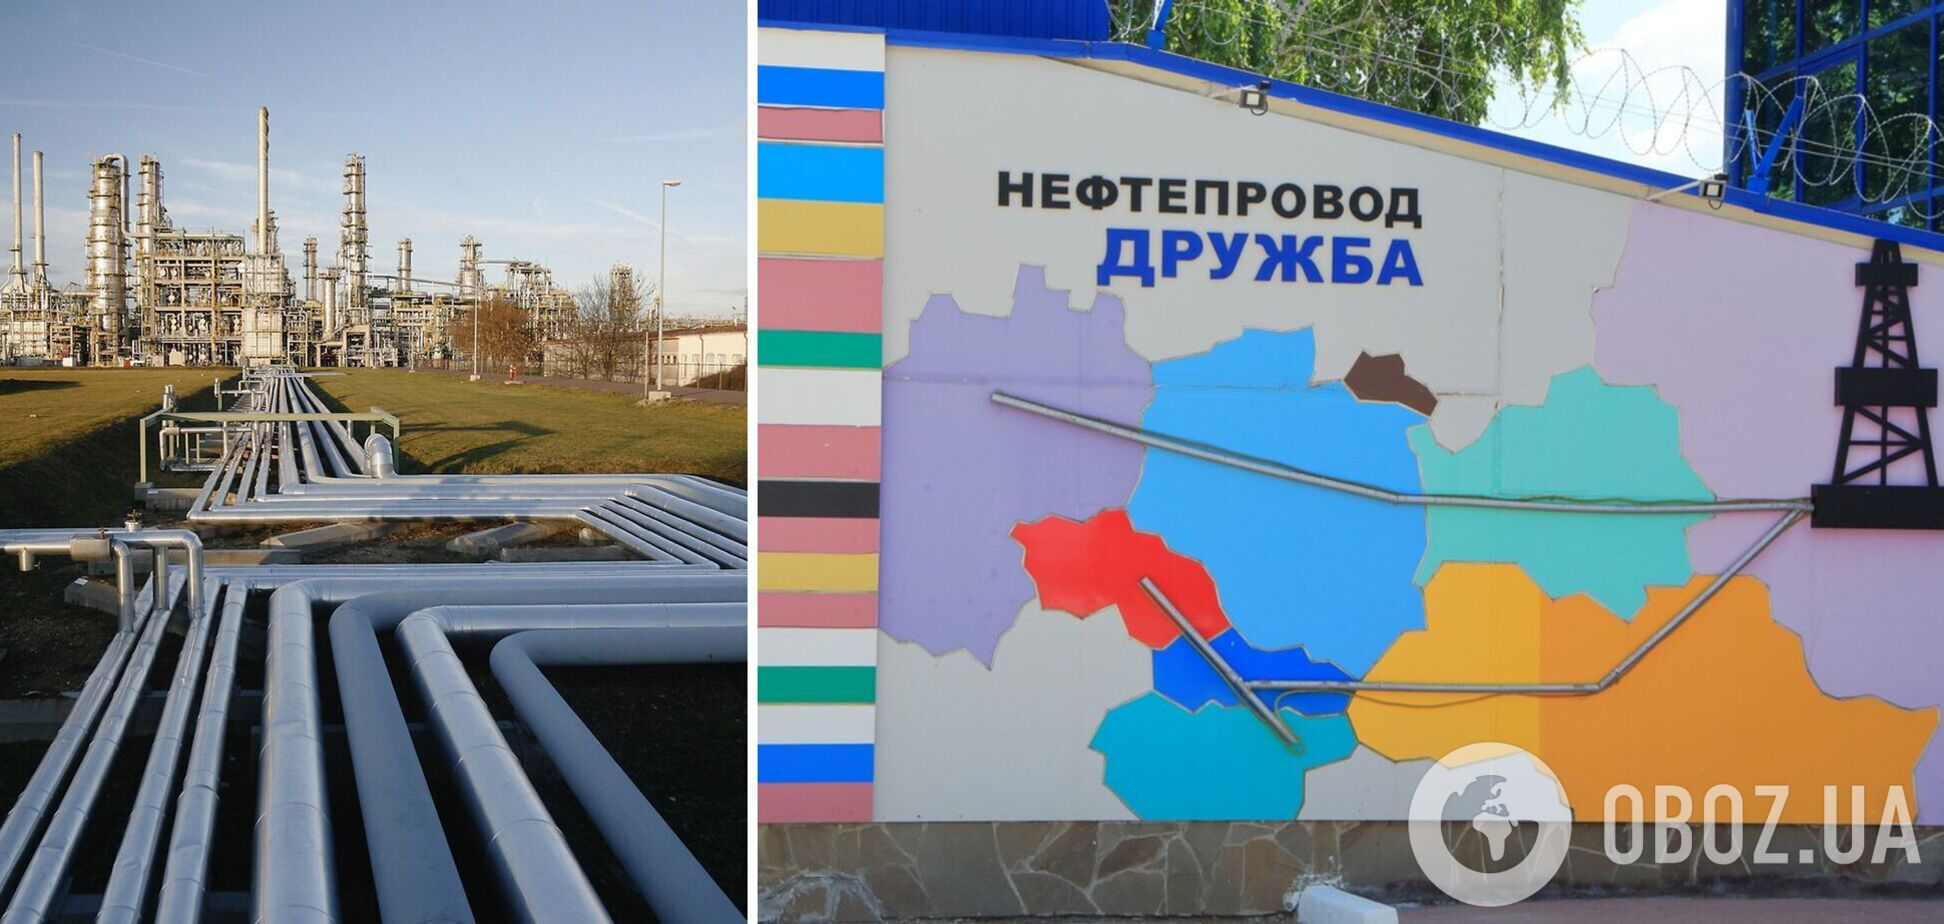 Нафта знову йде 'Дружбою' через Україну